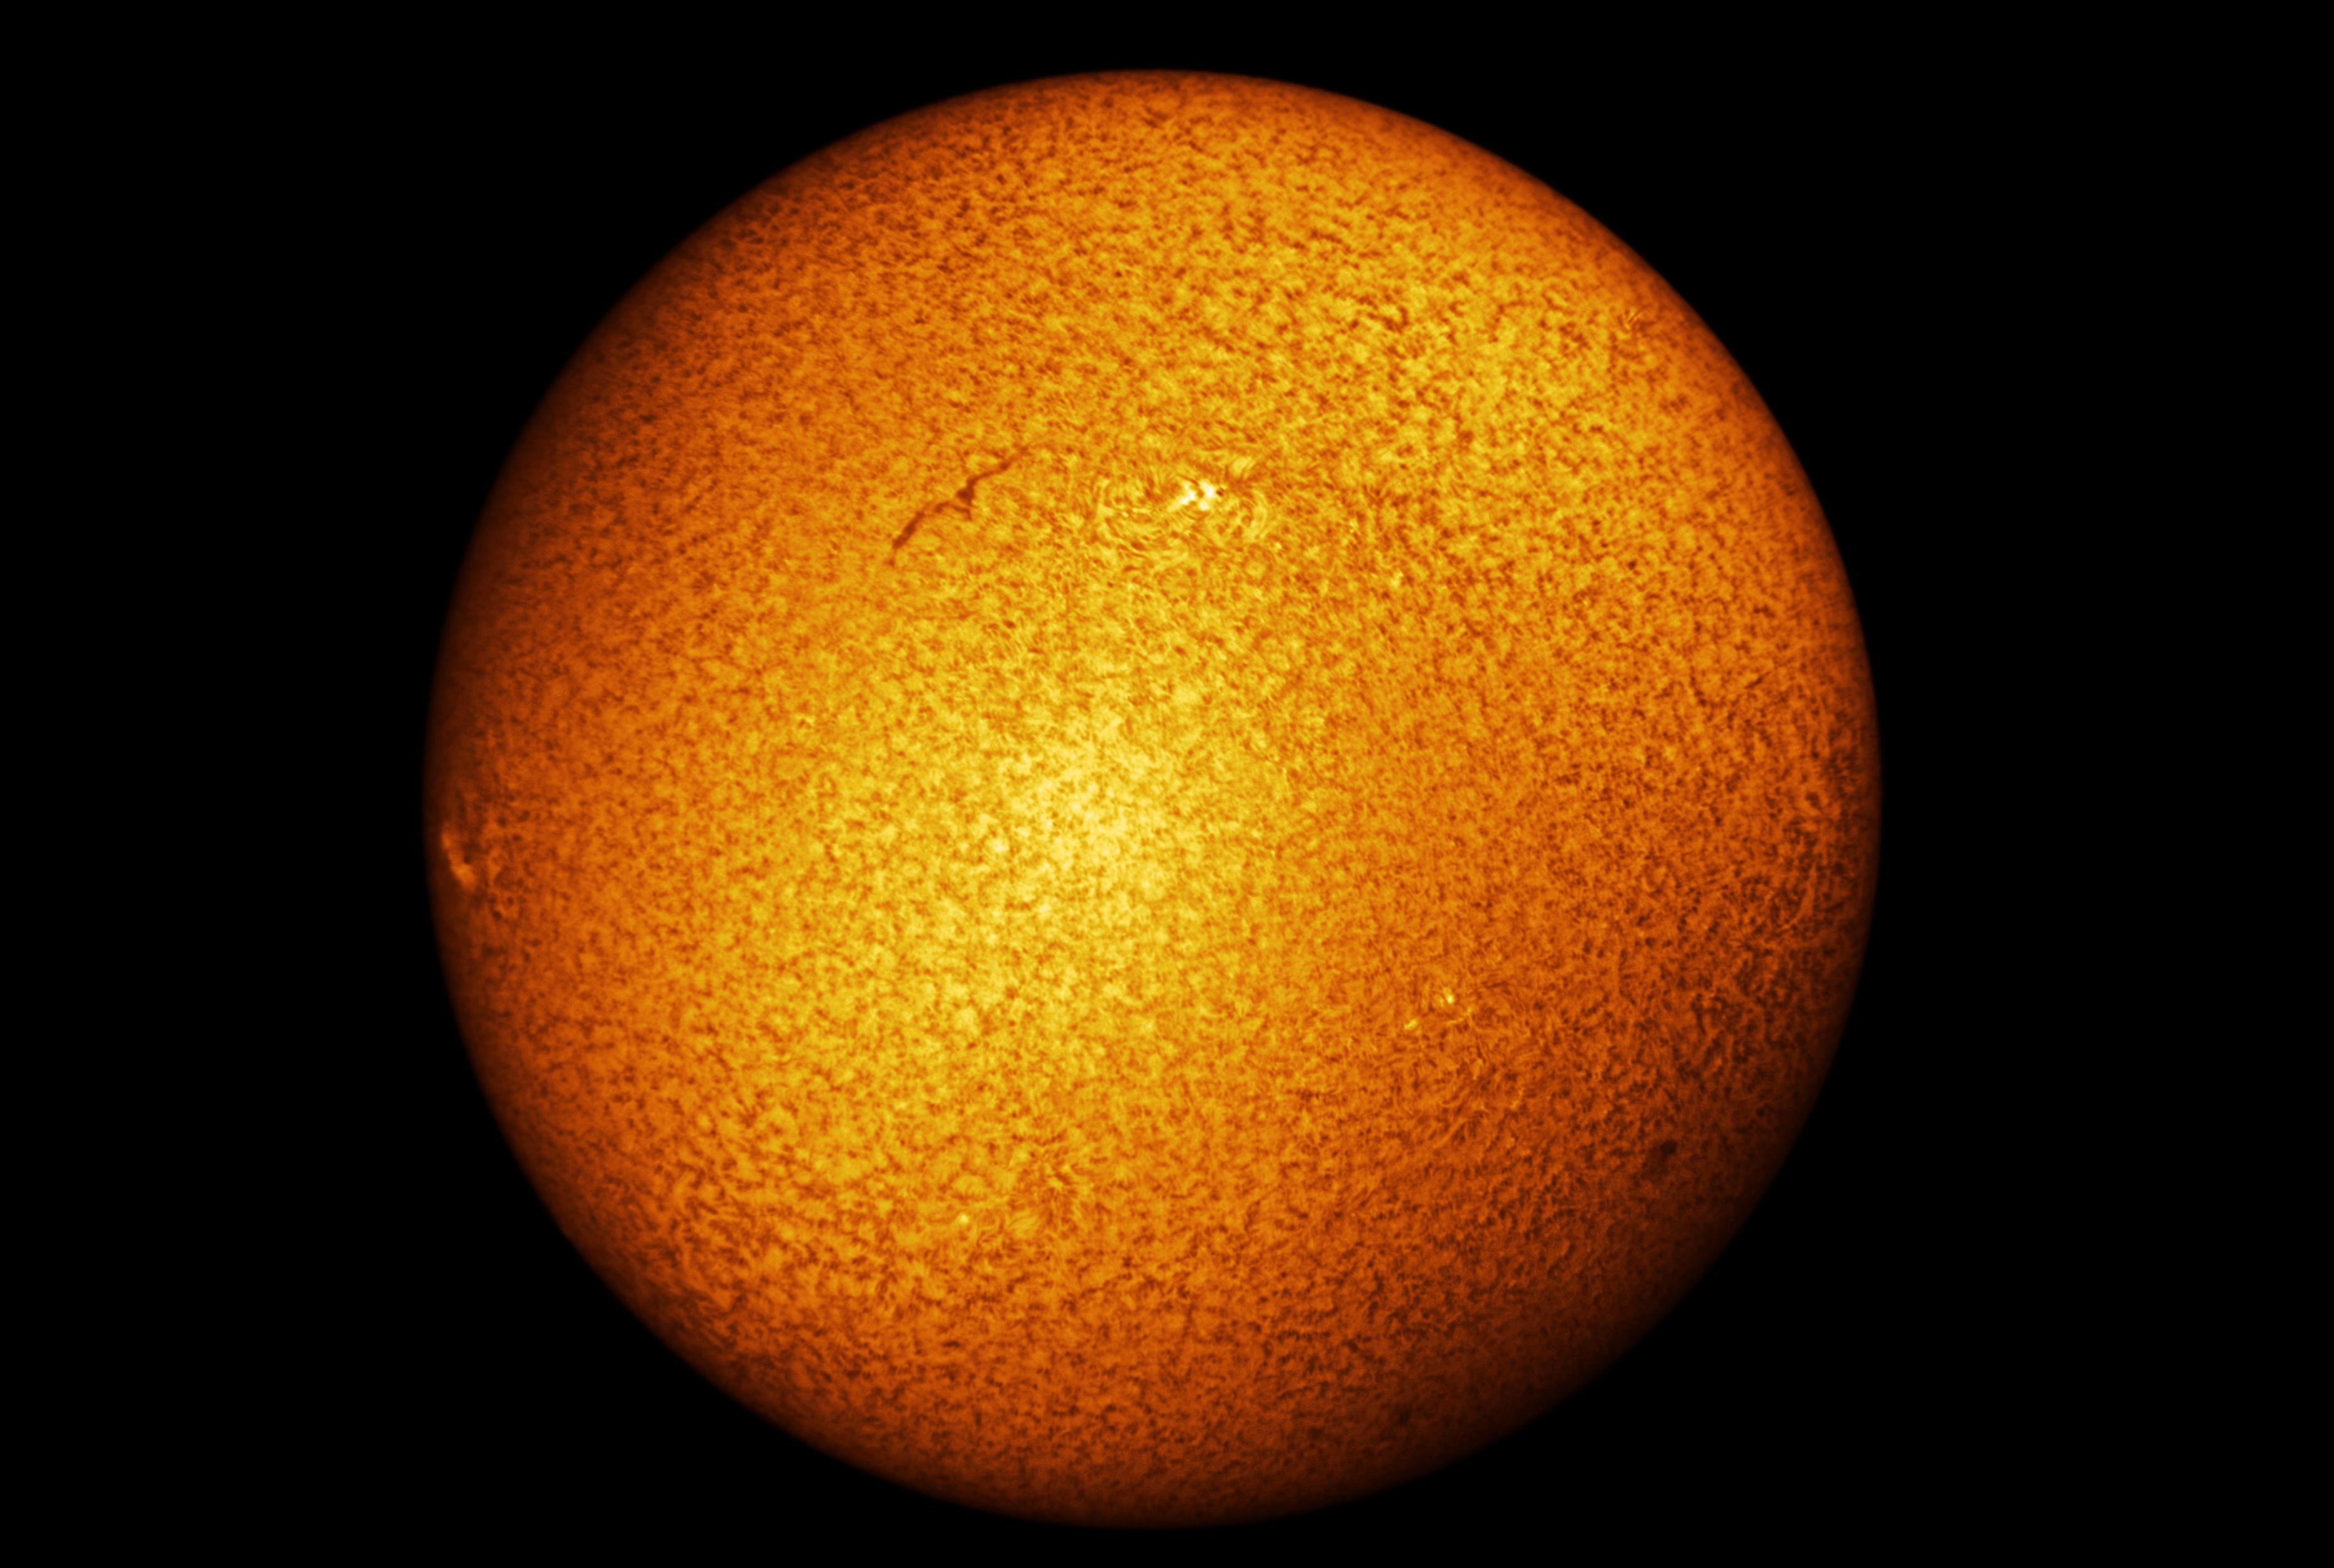 detailreiche Aufnahme der vollen Sonnenoberfläche vom 23.03.22